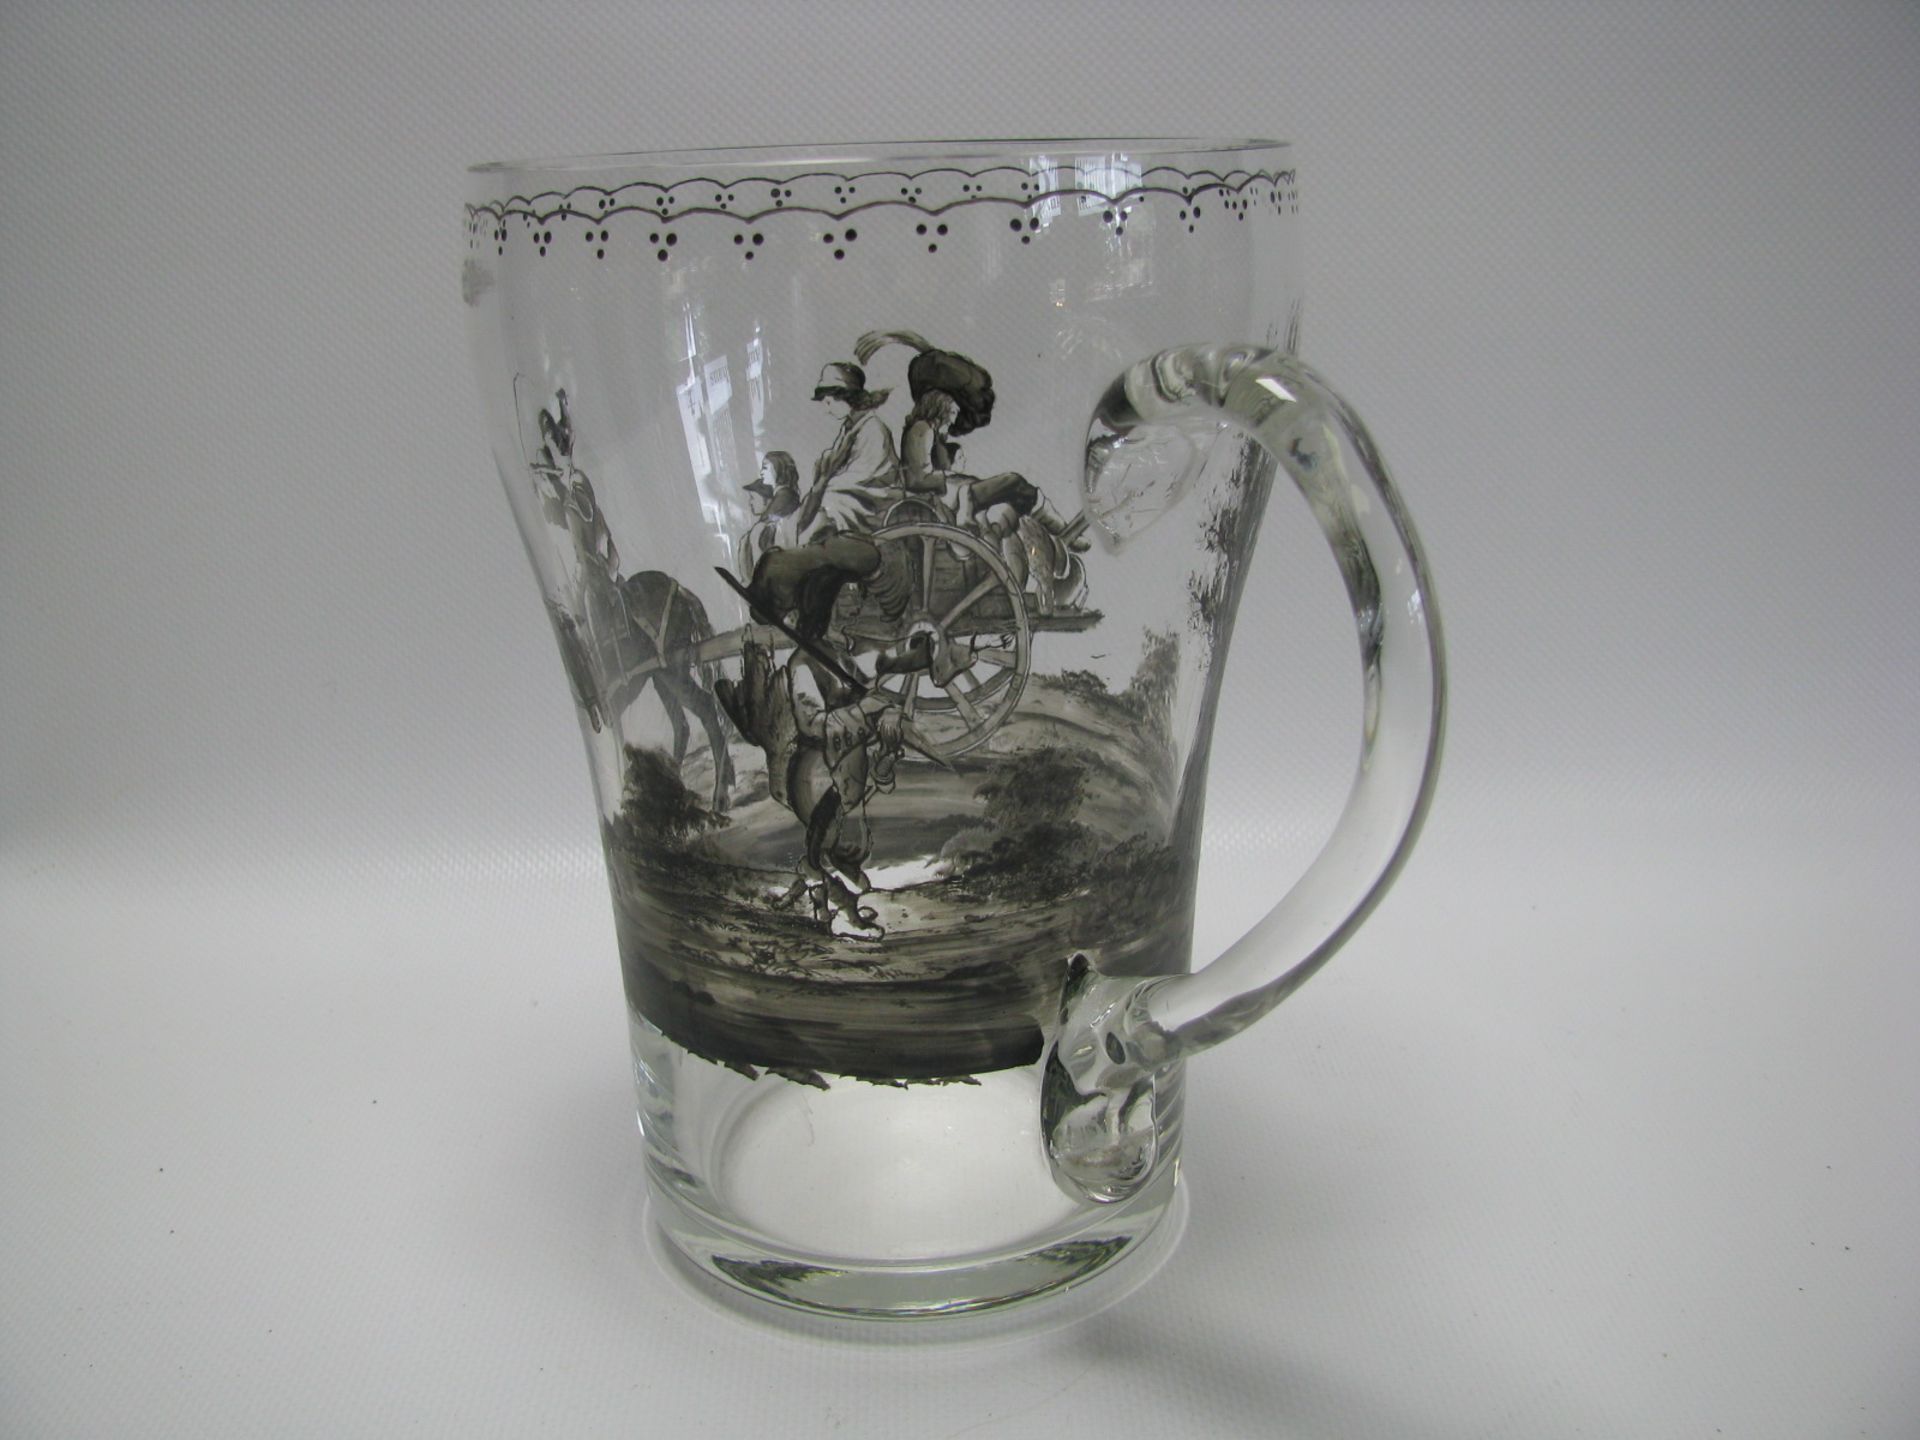 Henkelkrug, farbloses Glas mit mittelalterlicher Schwarzlotmalerei, h 17 cm, d 17,5 cm. - Bild 3 aus 3